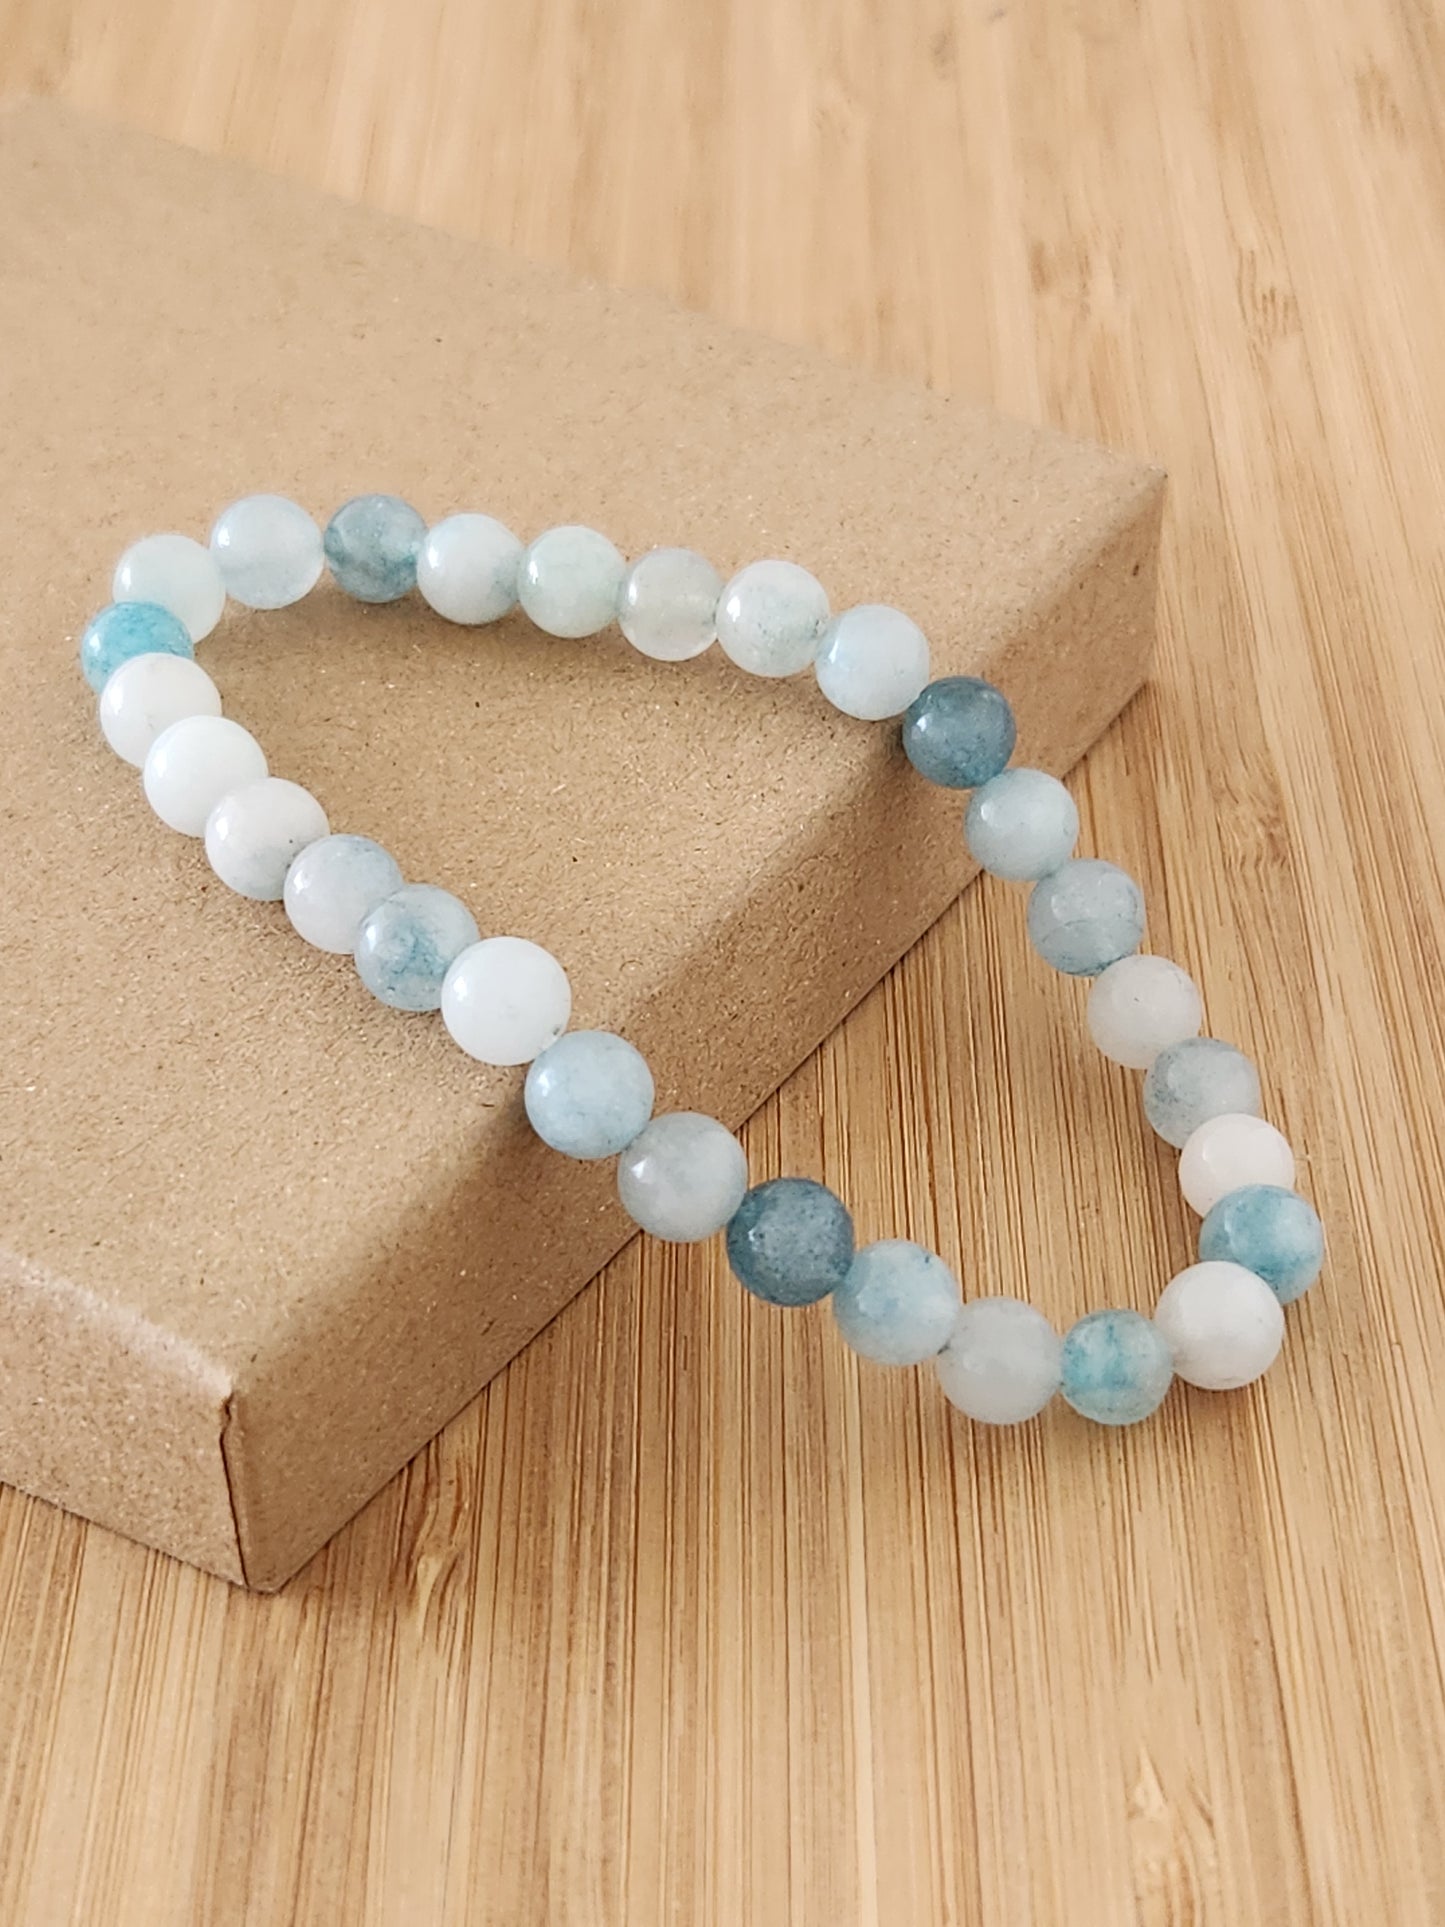 Light Blue Agate Bracelet - stability - patience - balance